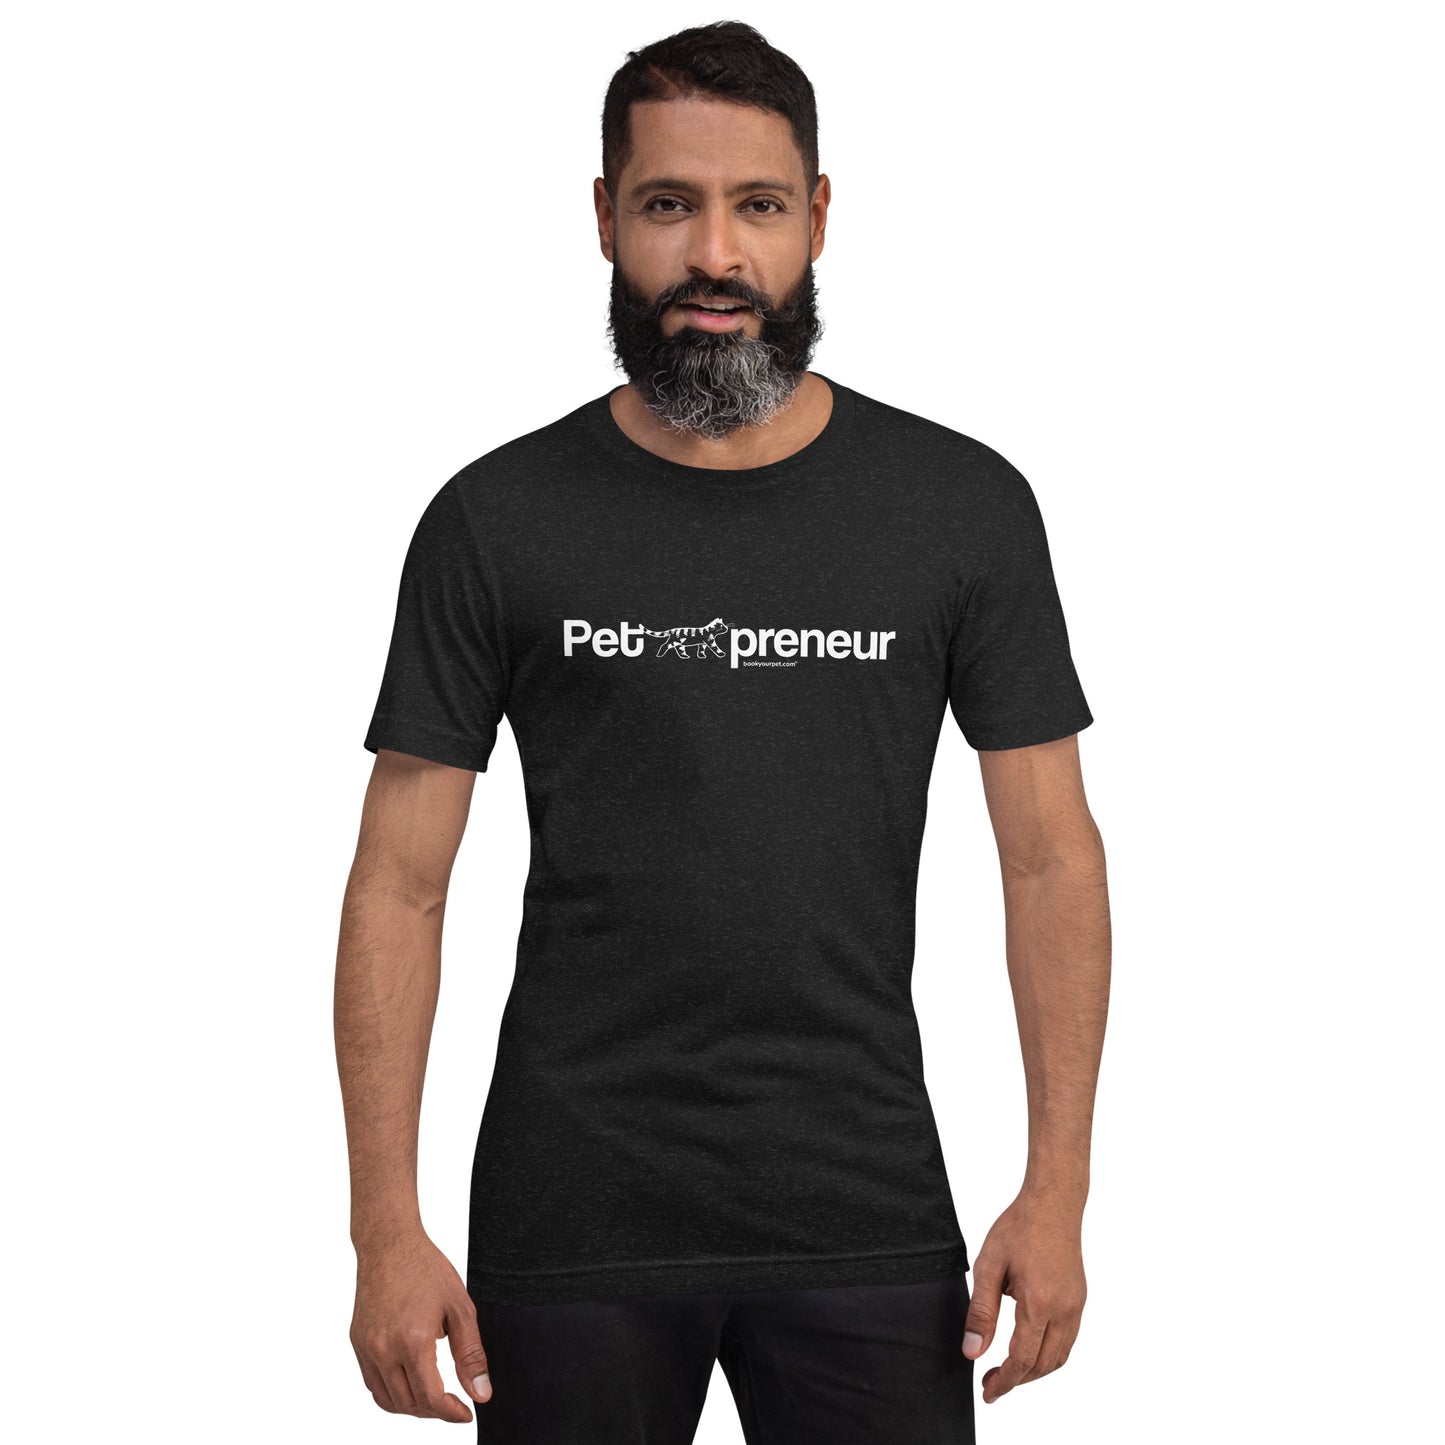 Unisex PetPreneur Cat t-shirt